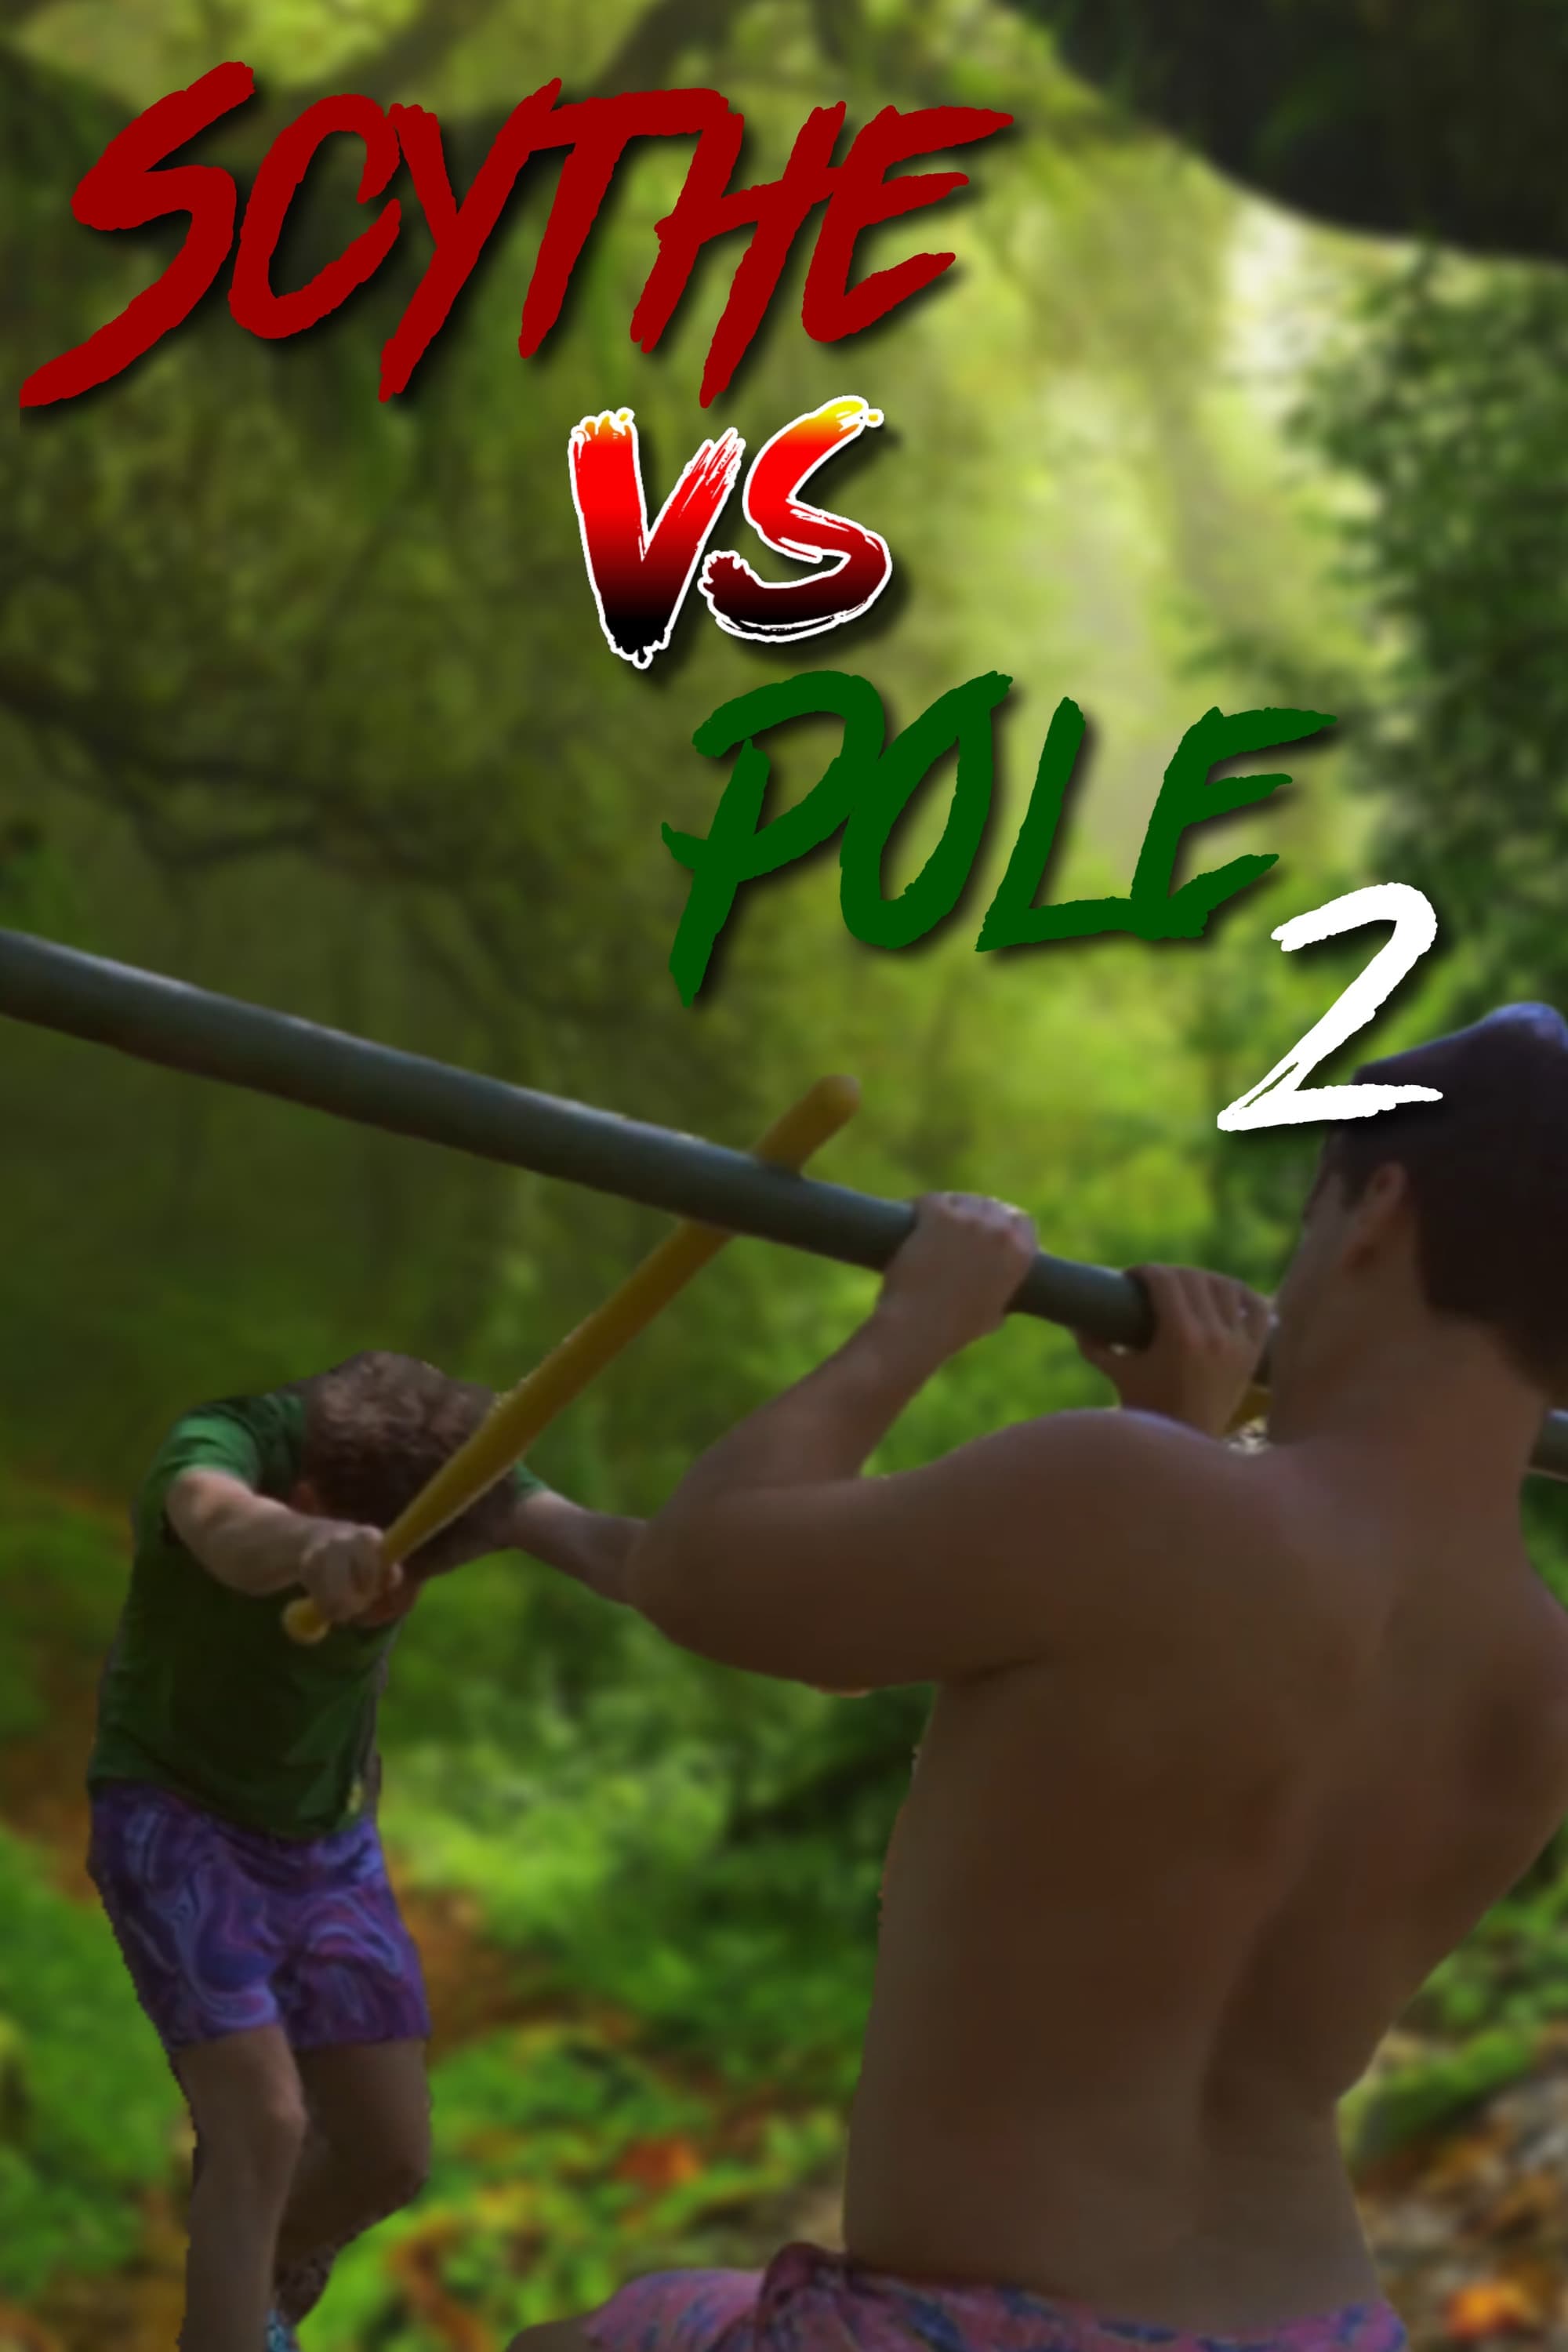 Scythe vs Pole 2